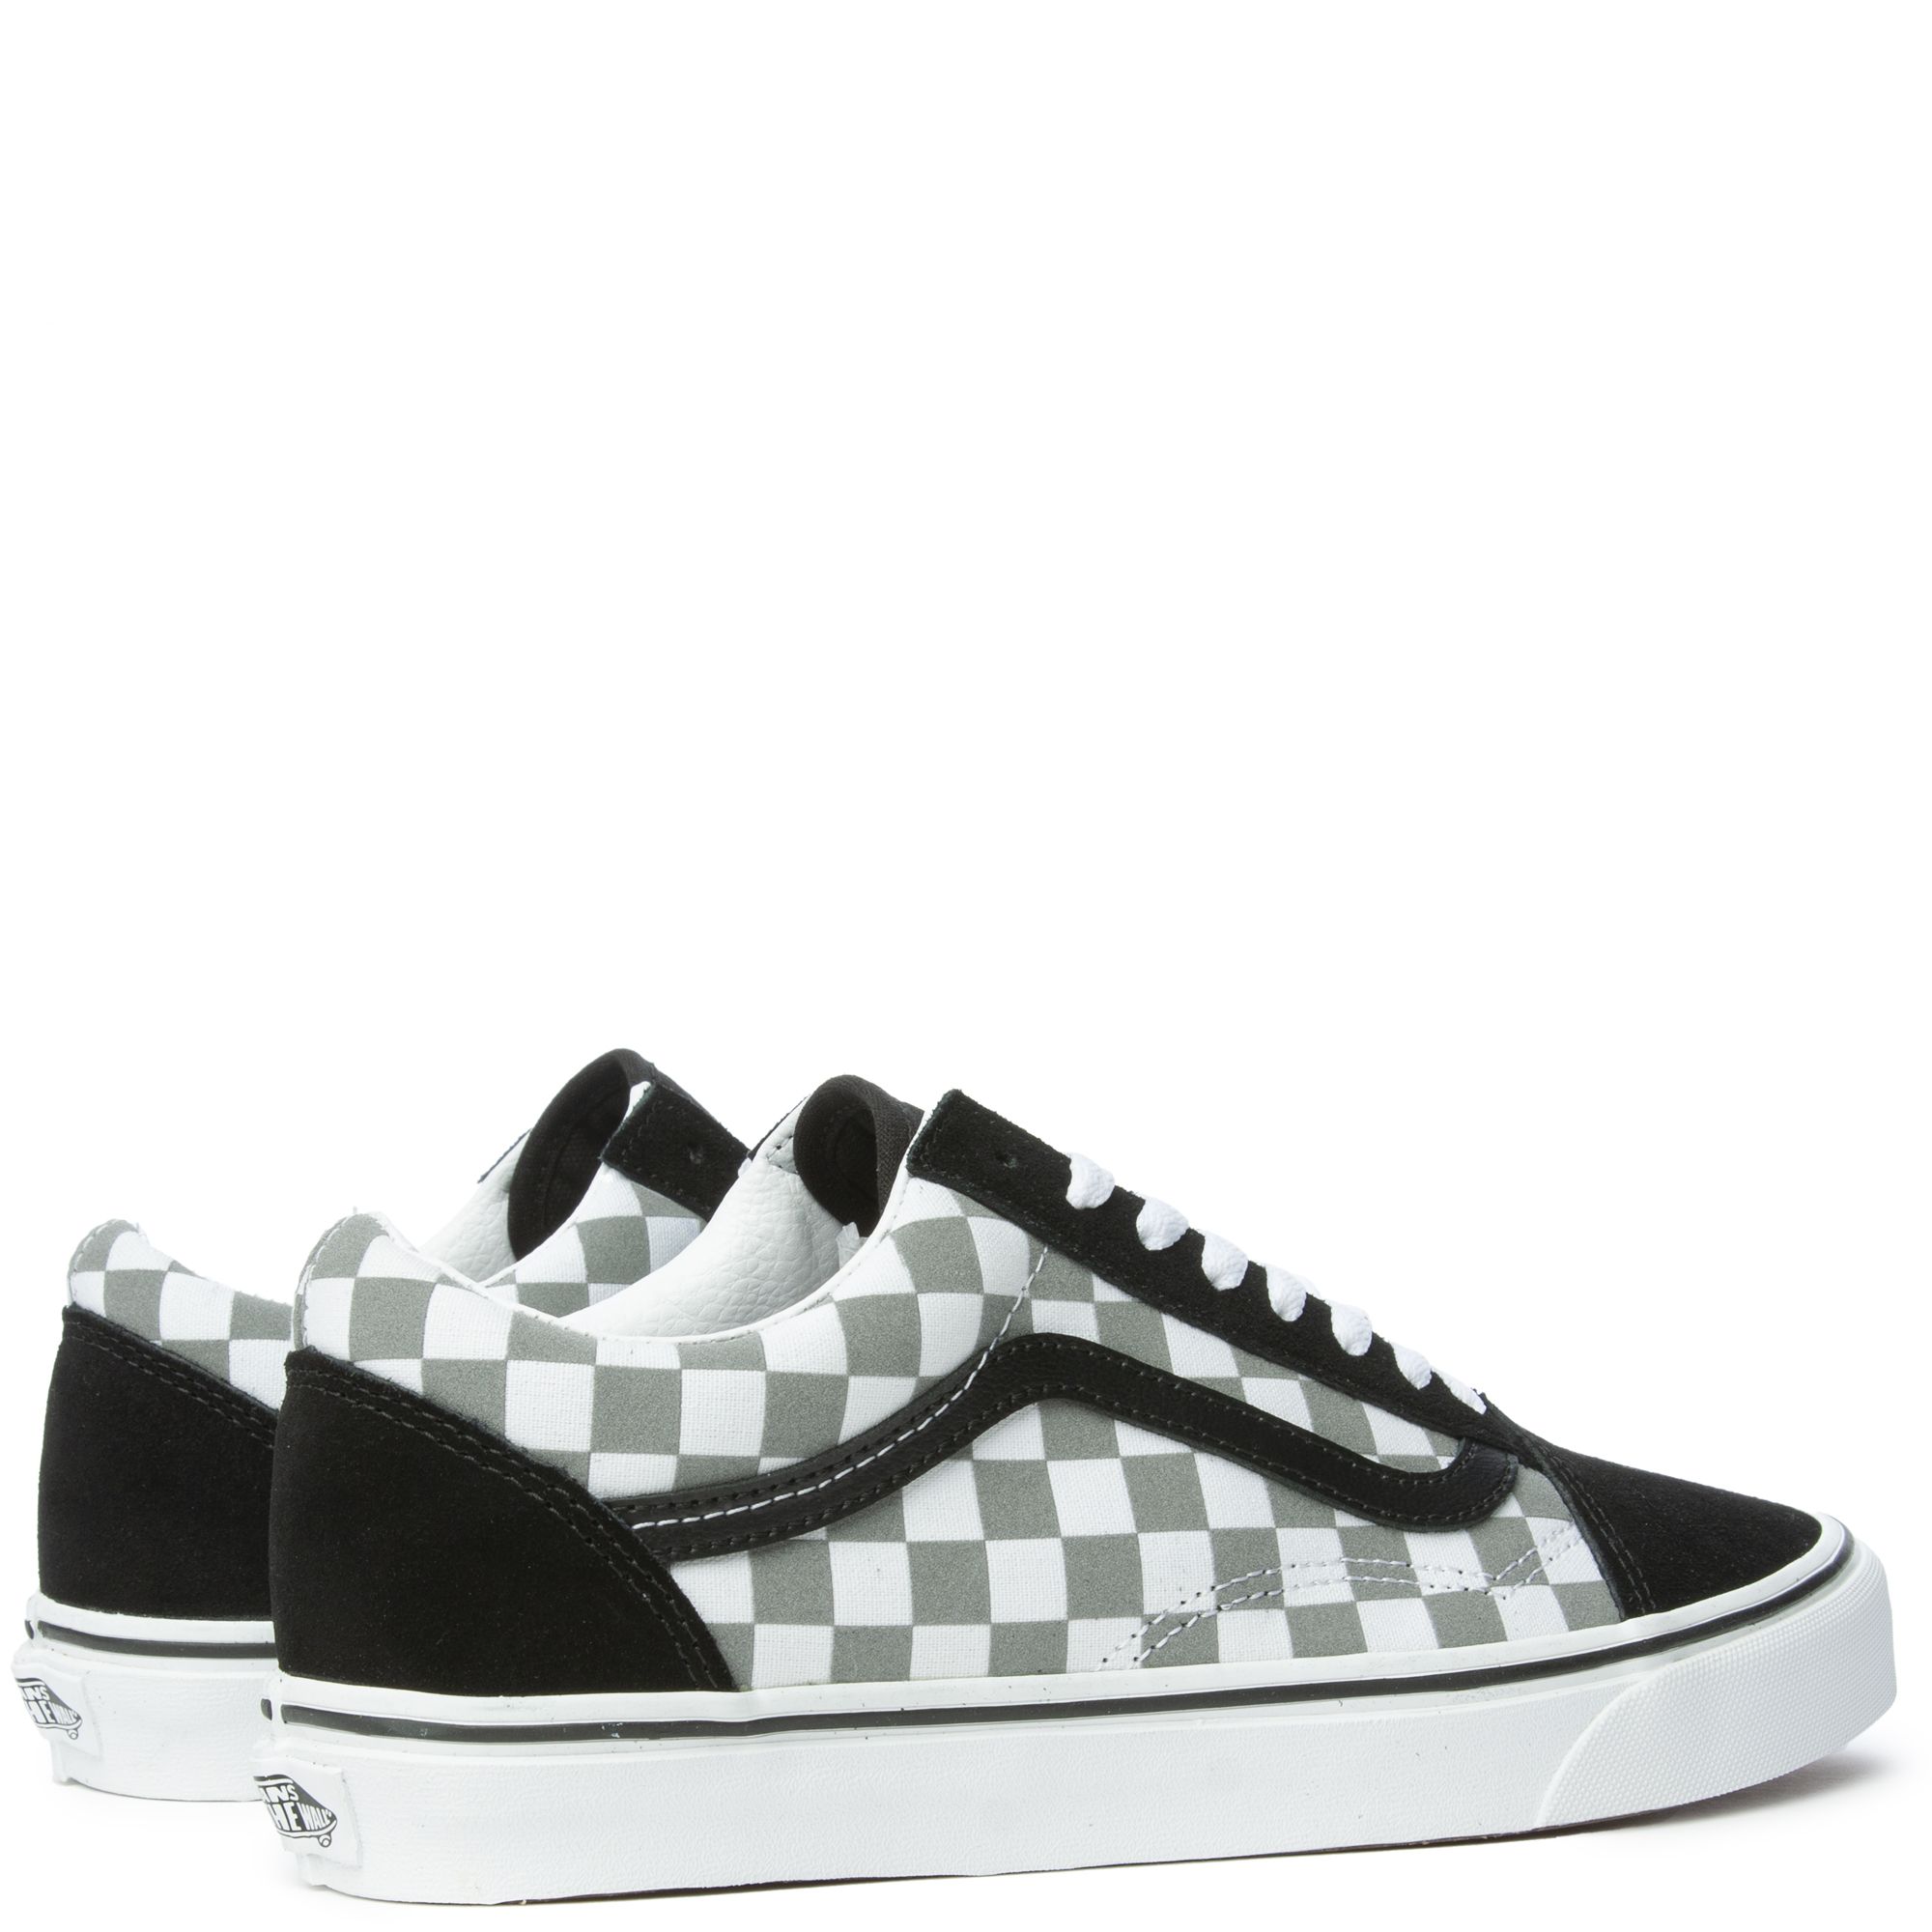 Vans Old Skool Cosmic Checkerboard Reflective Black Grey Sneakers  VN0A5JMIB9J